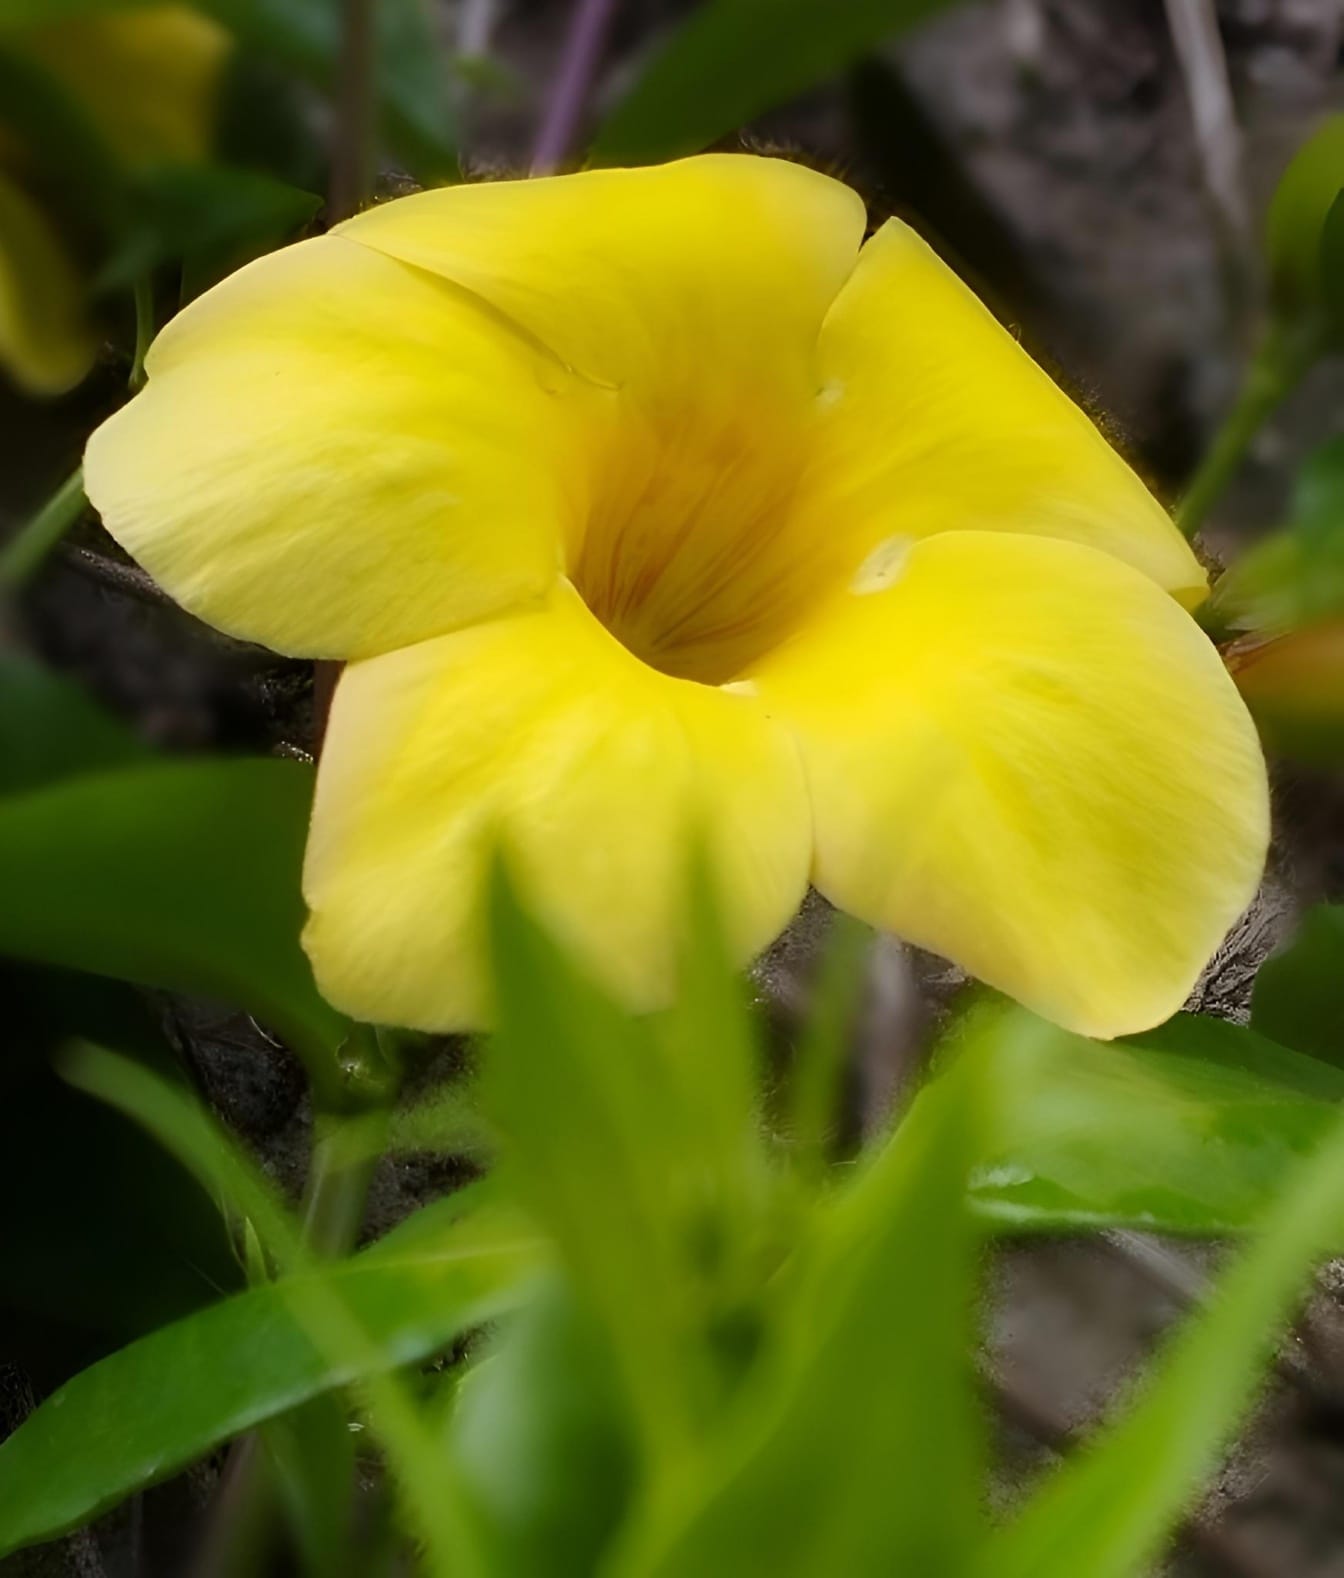 Çalı olarak bilinen yeşil yapraklı sarı çiçek Allamanda (Allamanda schottii)